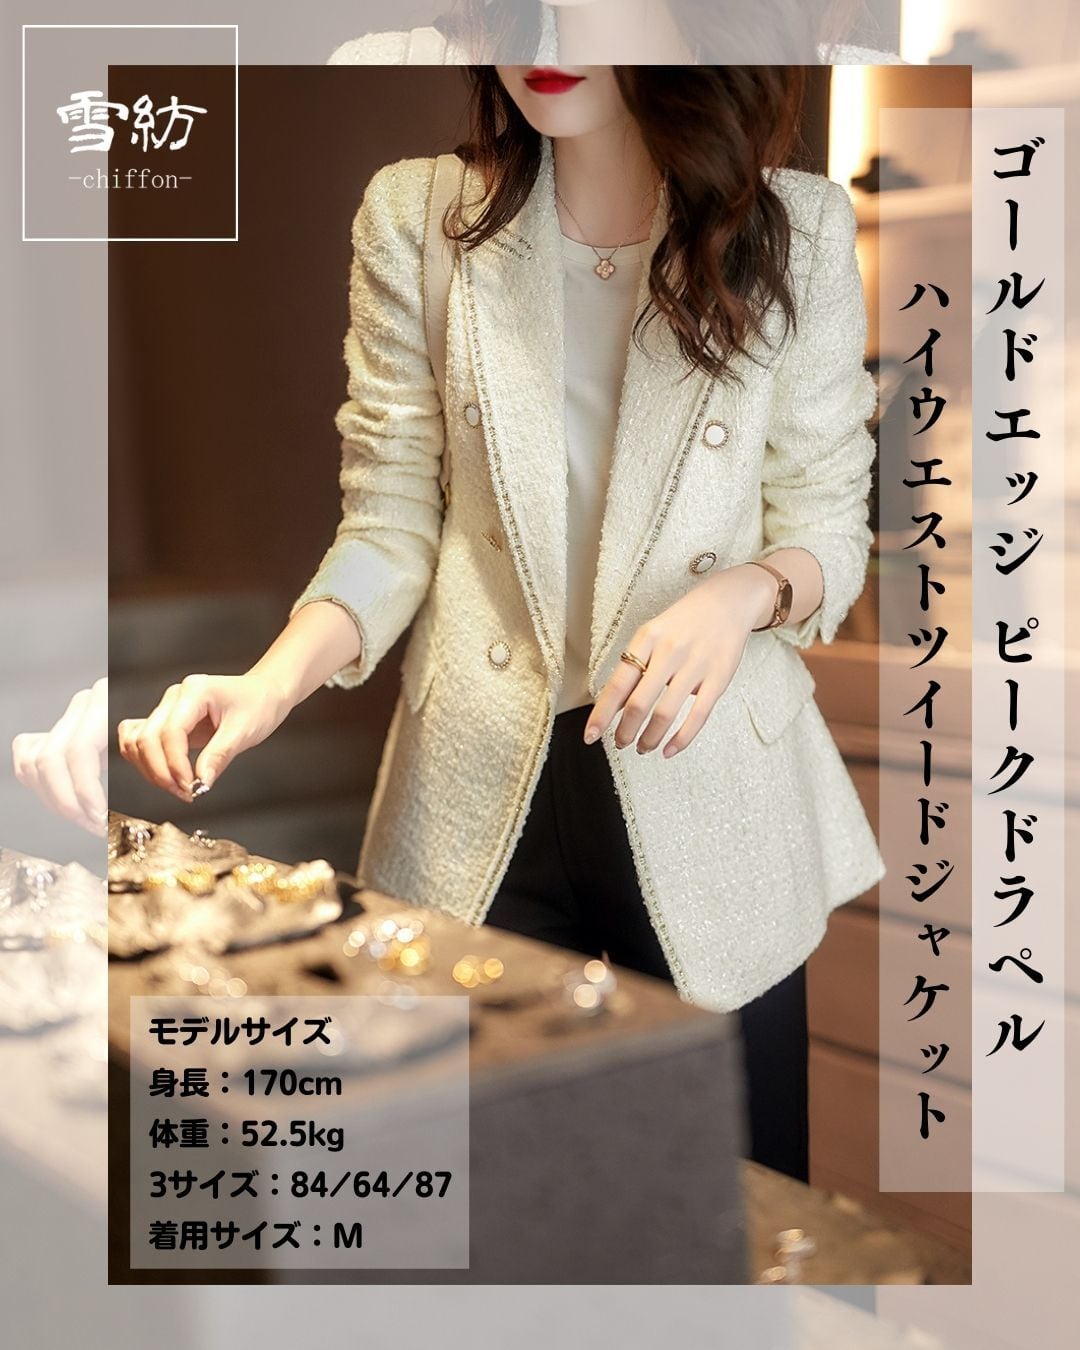 ✨羊毛・絹✨ miss ashida ウエストベルト ツイードジャケット 7